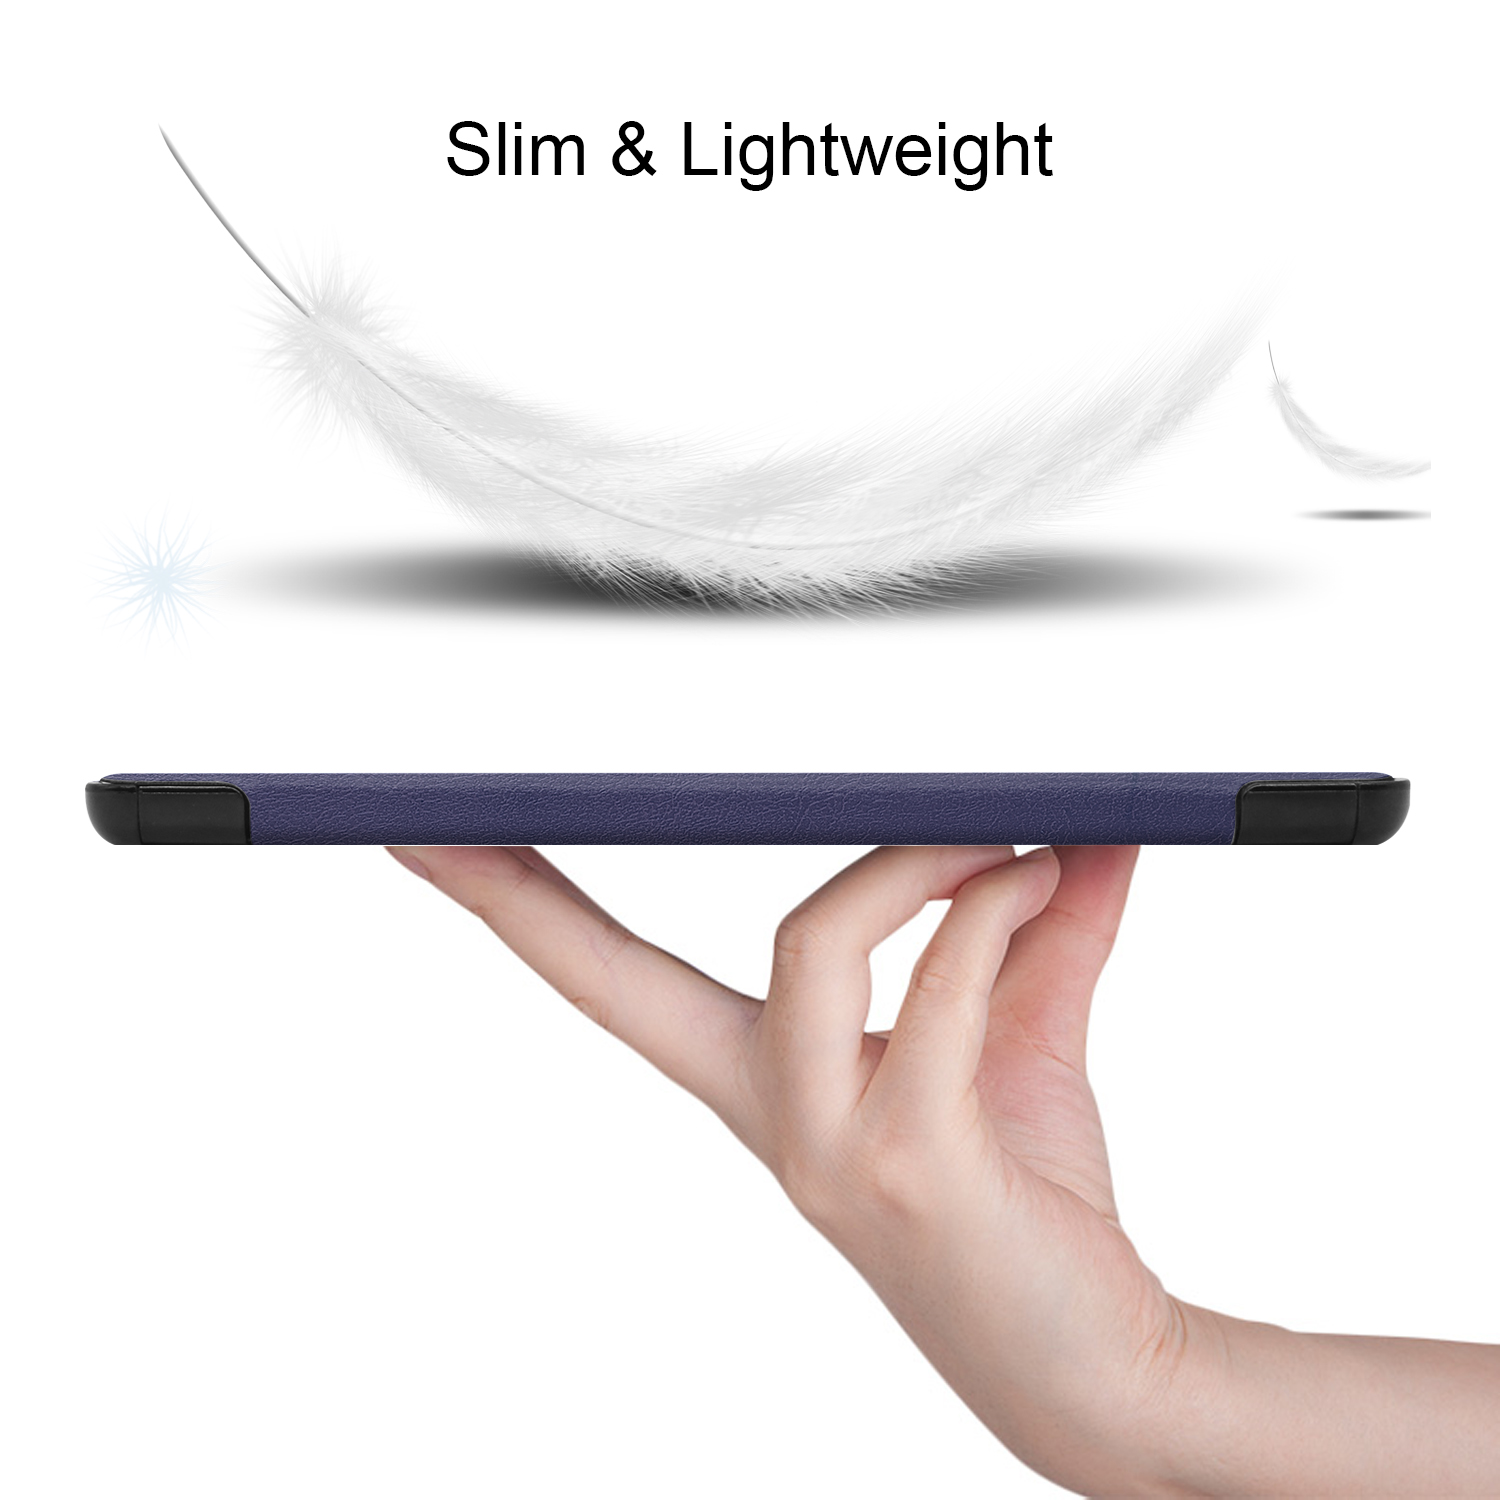 Hülle 2023 12.4 Samsung LOBWERK S9+ SM-X816B Tab Plus für SM-X818U Schutzhülle Zoll Blau Kunstleder, SM-X810 Bookcover